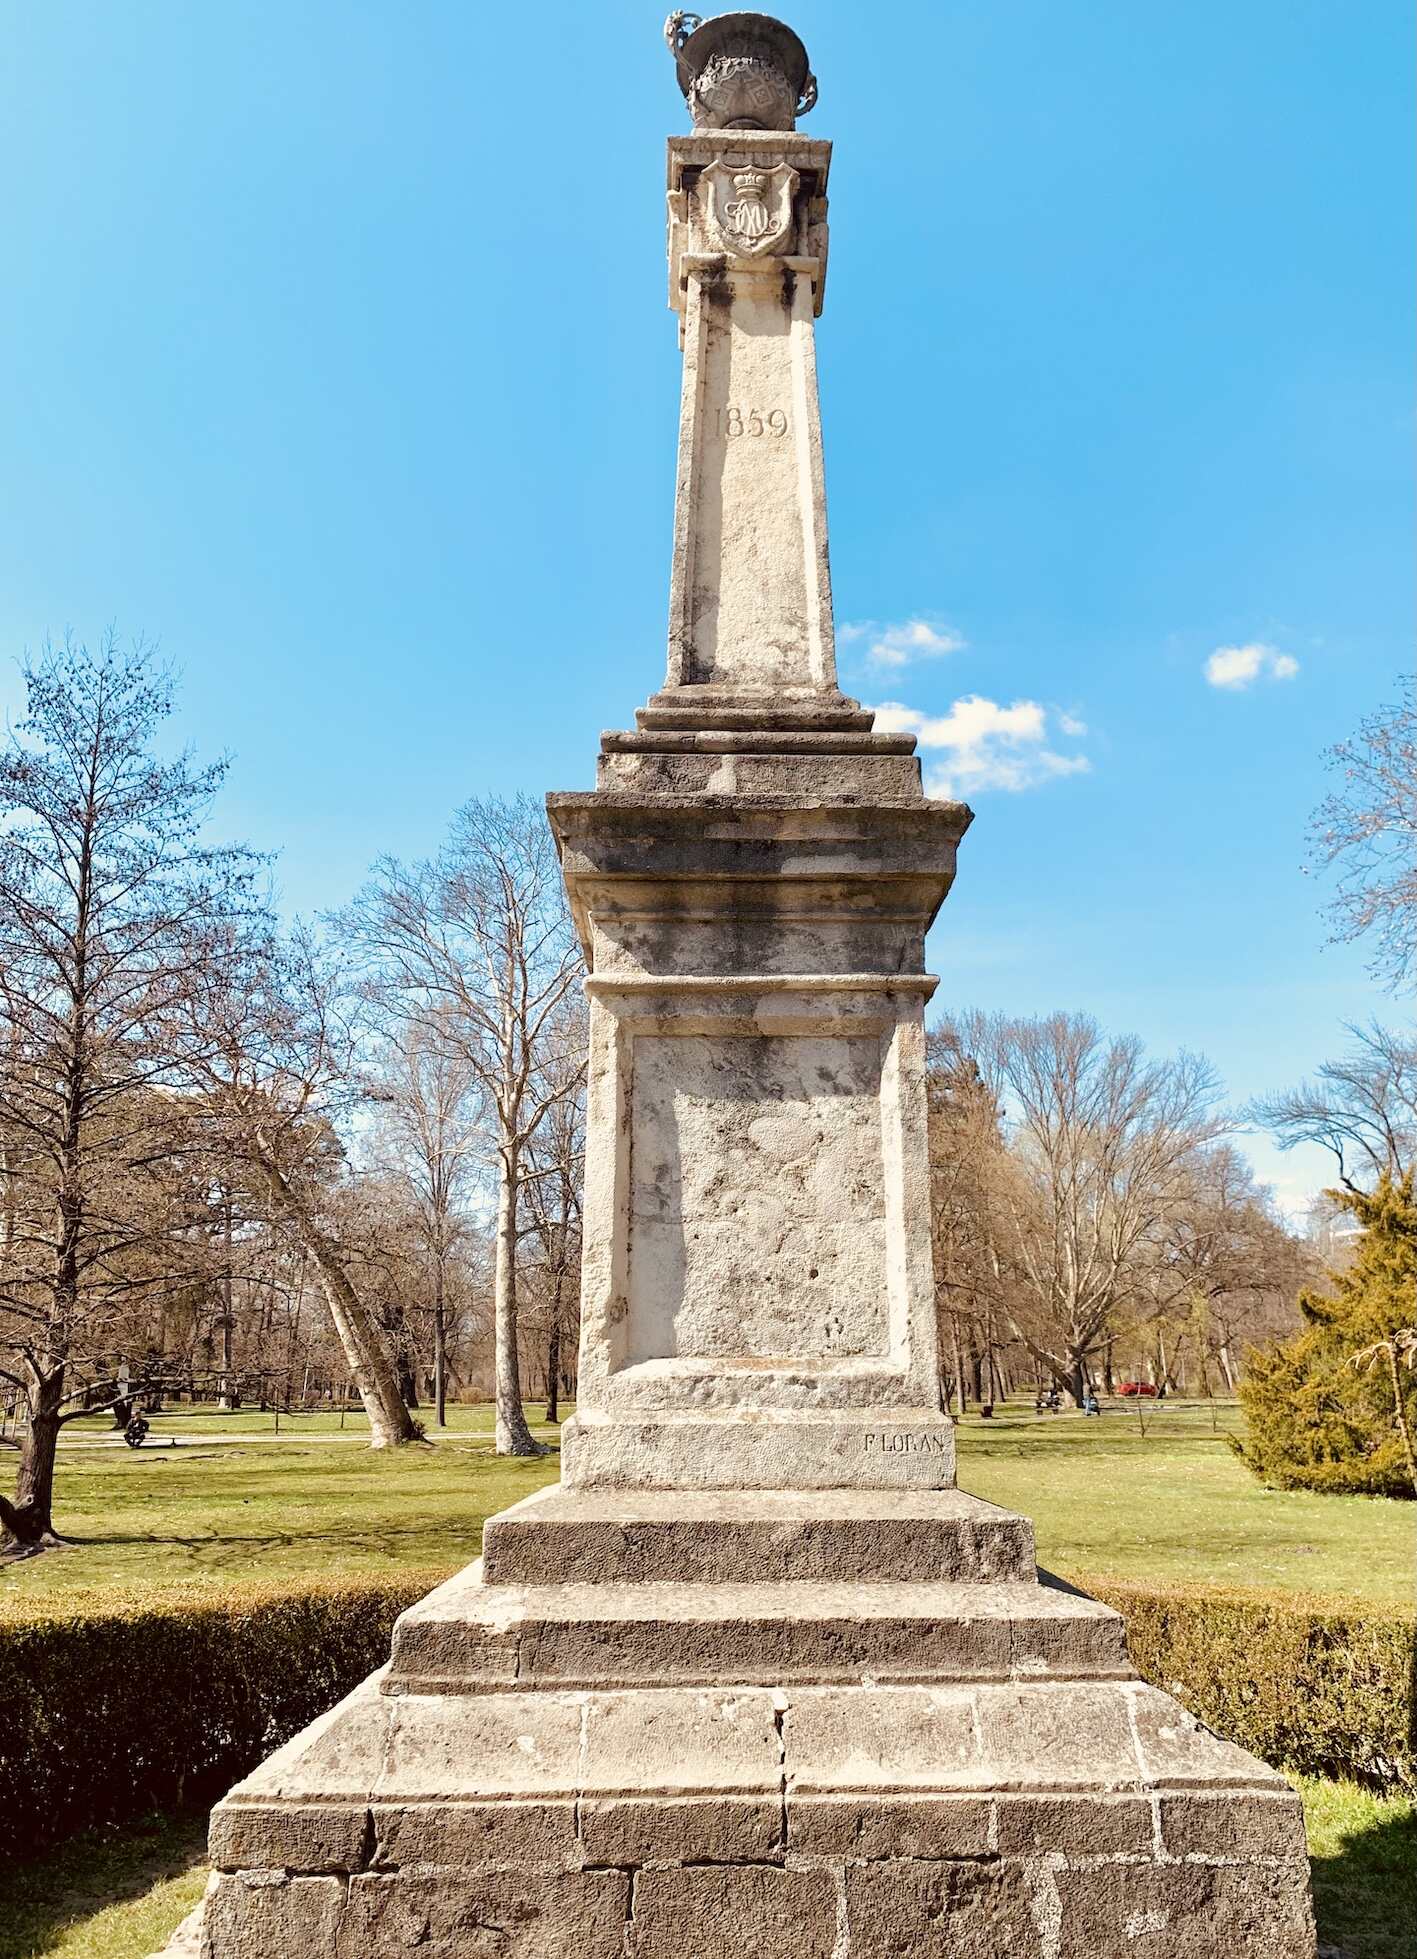 1859 Stone Obelisk Topcider Park.